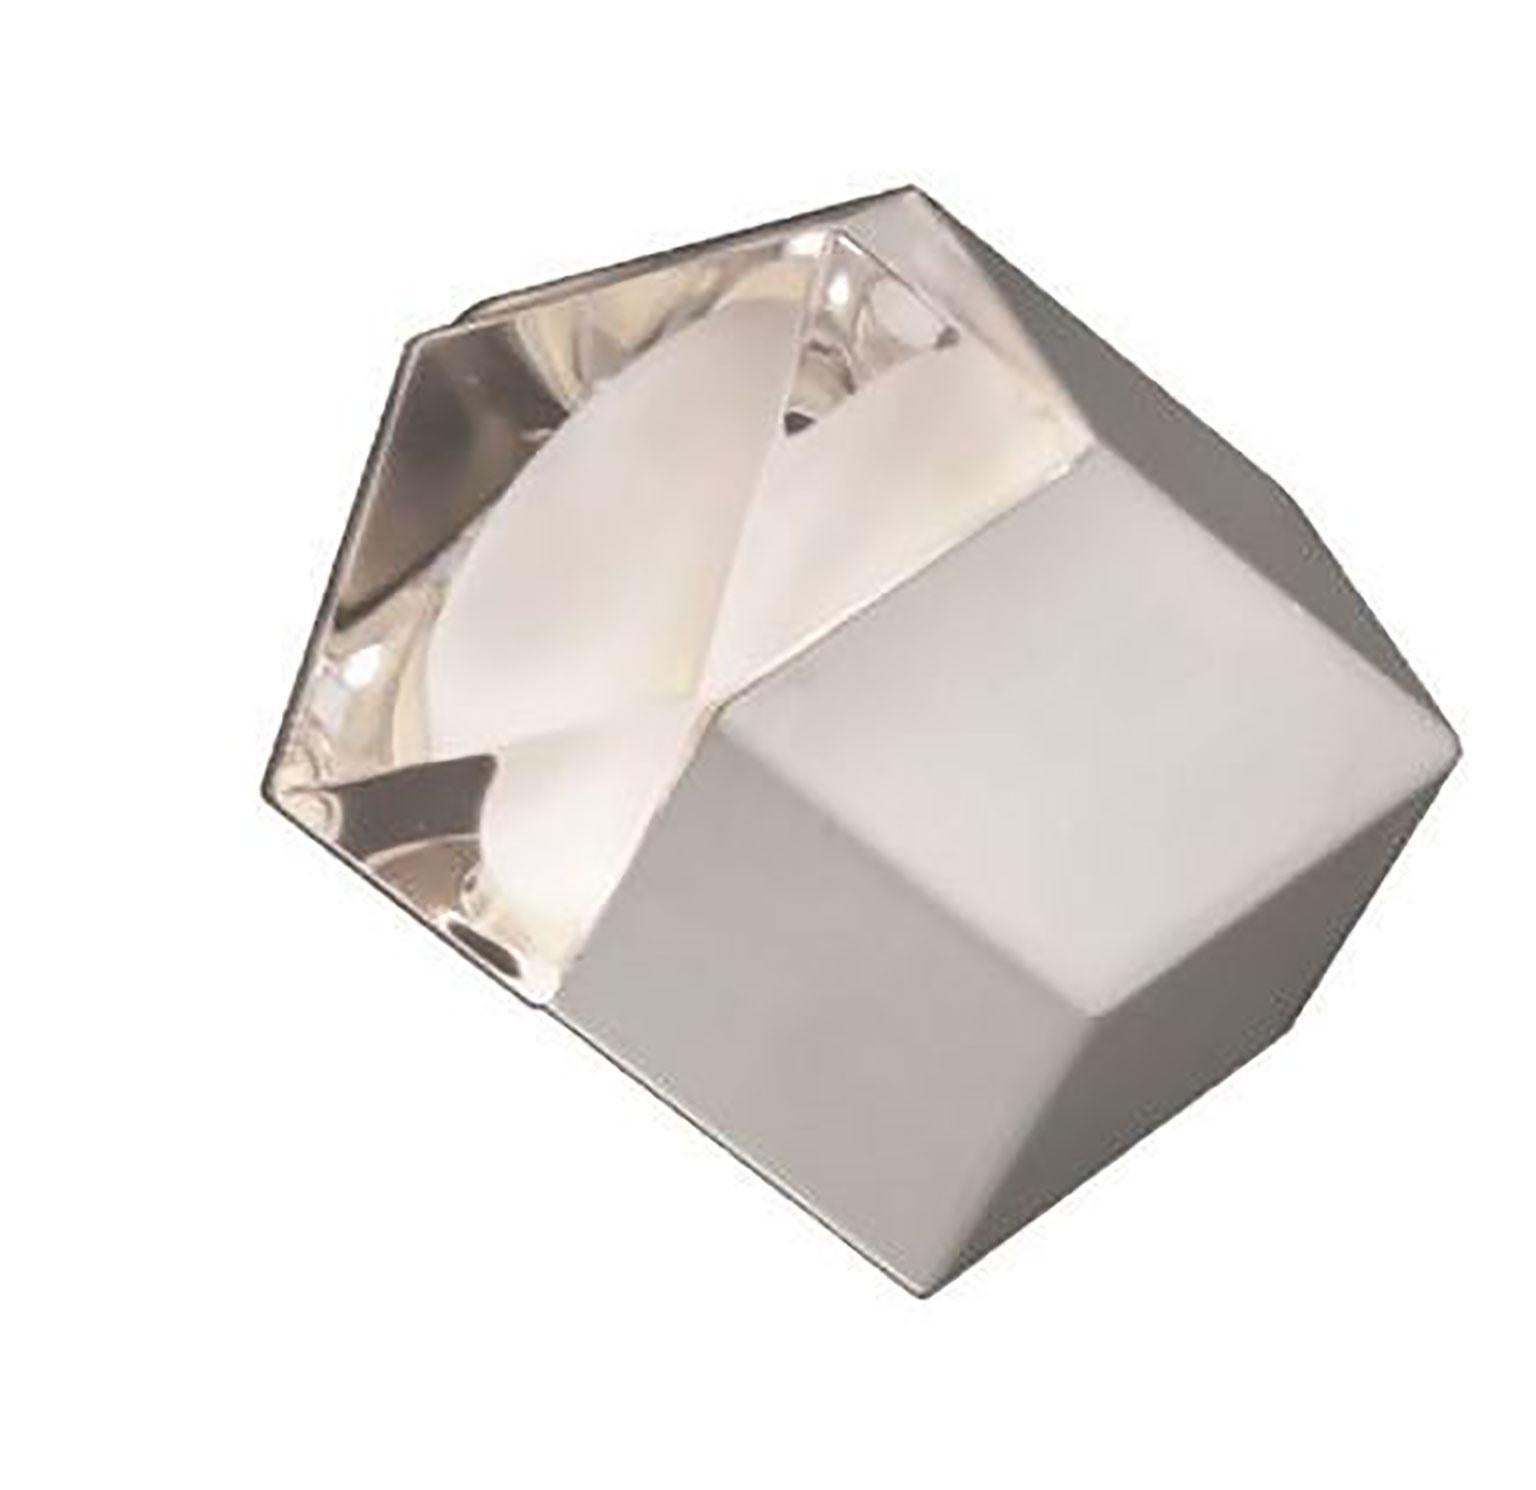 Applique Astro conçue par Giopato & Coombes pour Oluce. La lampe présente trois surfaces transparentes et sablées et le reste est opaque, ce qui la fait ressembler à un bijou dont les géométries sont soulignées par les matériaux qui le composent :